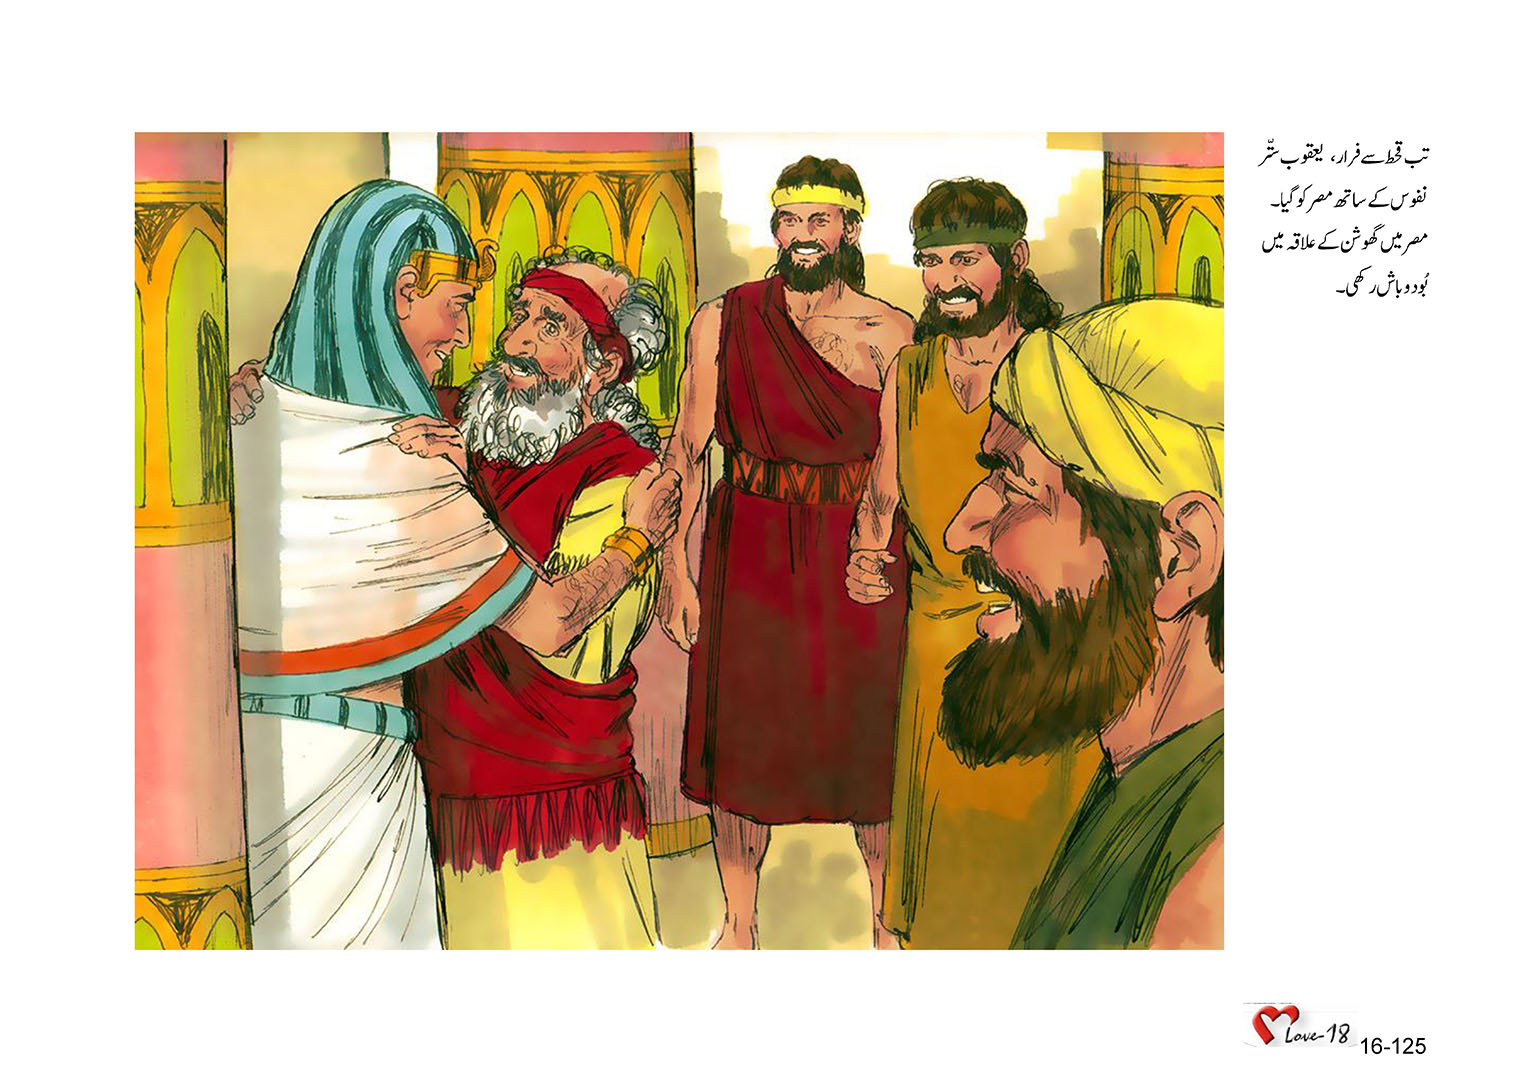 باب 16 - سبق 52 - سلیمان  کی  سلطنت  کا  زوال